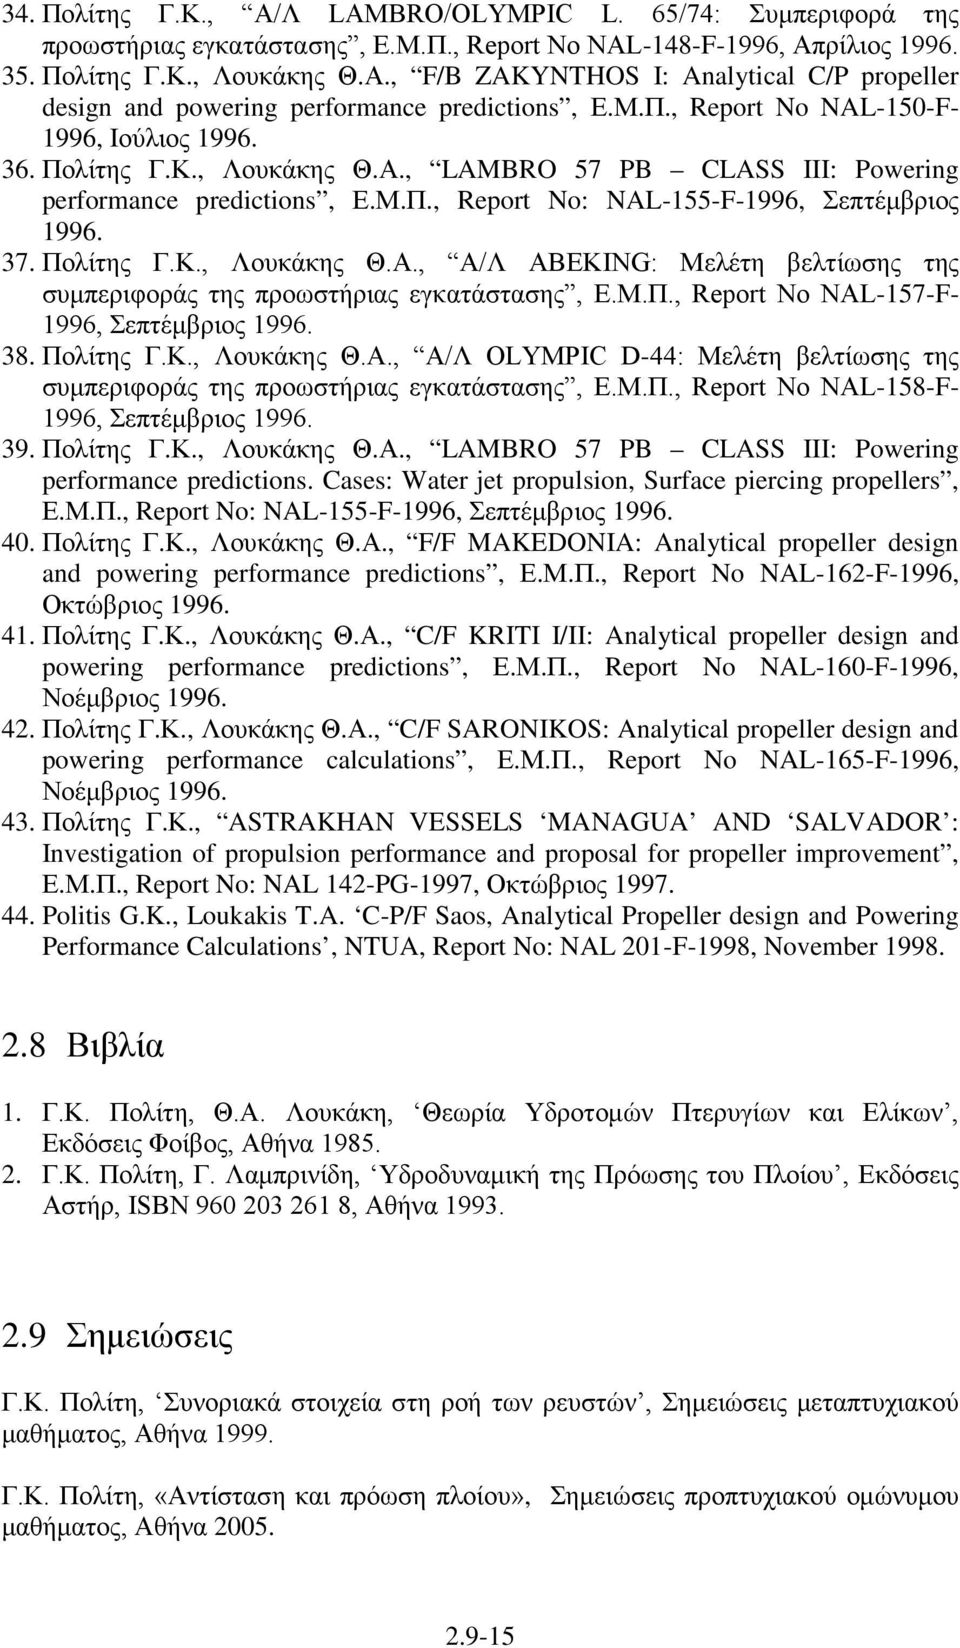 Πολίτης Γ.Κ., Λουκάκης Θ.Α., Α/Λ ABEKING: Μελέτη βελτίωσης της συμπεριφοράς της προωστήριας εγκατάστασης, Ε.Μ.Π., Report No NAL-157-F- 1996, Σεπτέμβριος 1996. 38. Πολίτης Γ.Κ., Λουκάκης Θ.Α., Α/Λ OLYMPIC D-44: Μελέτη βελτίωσης της συμπεριφοράς της προωστήριας εγκατάστασης, Ε.